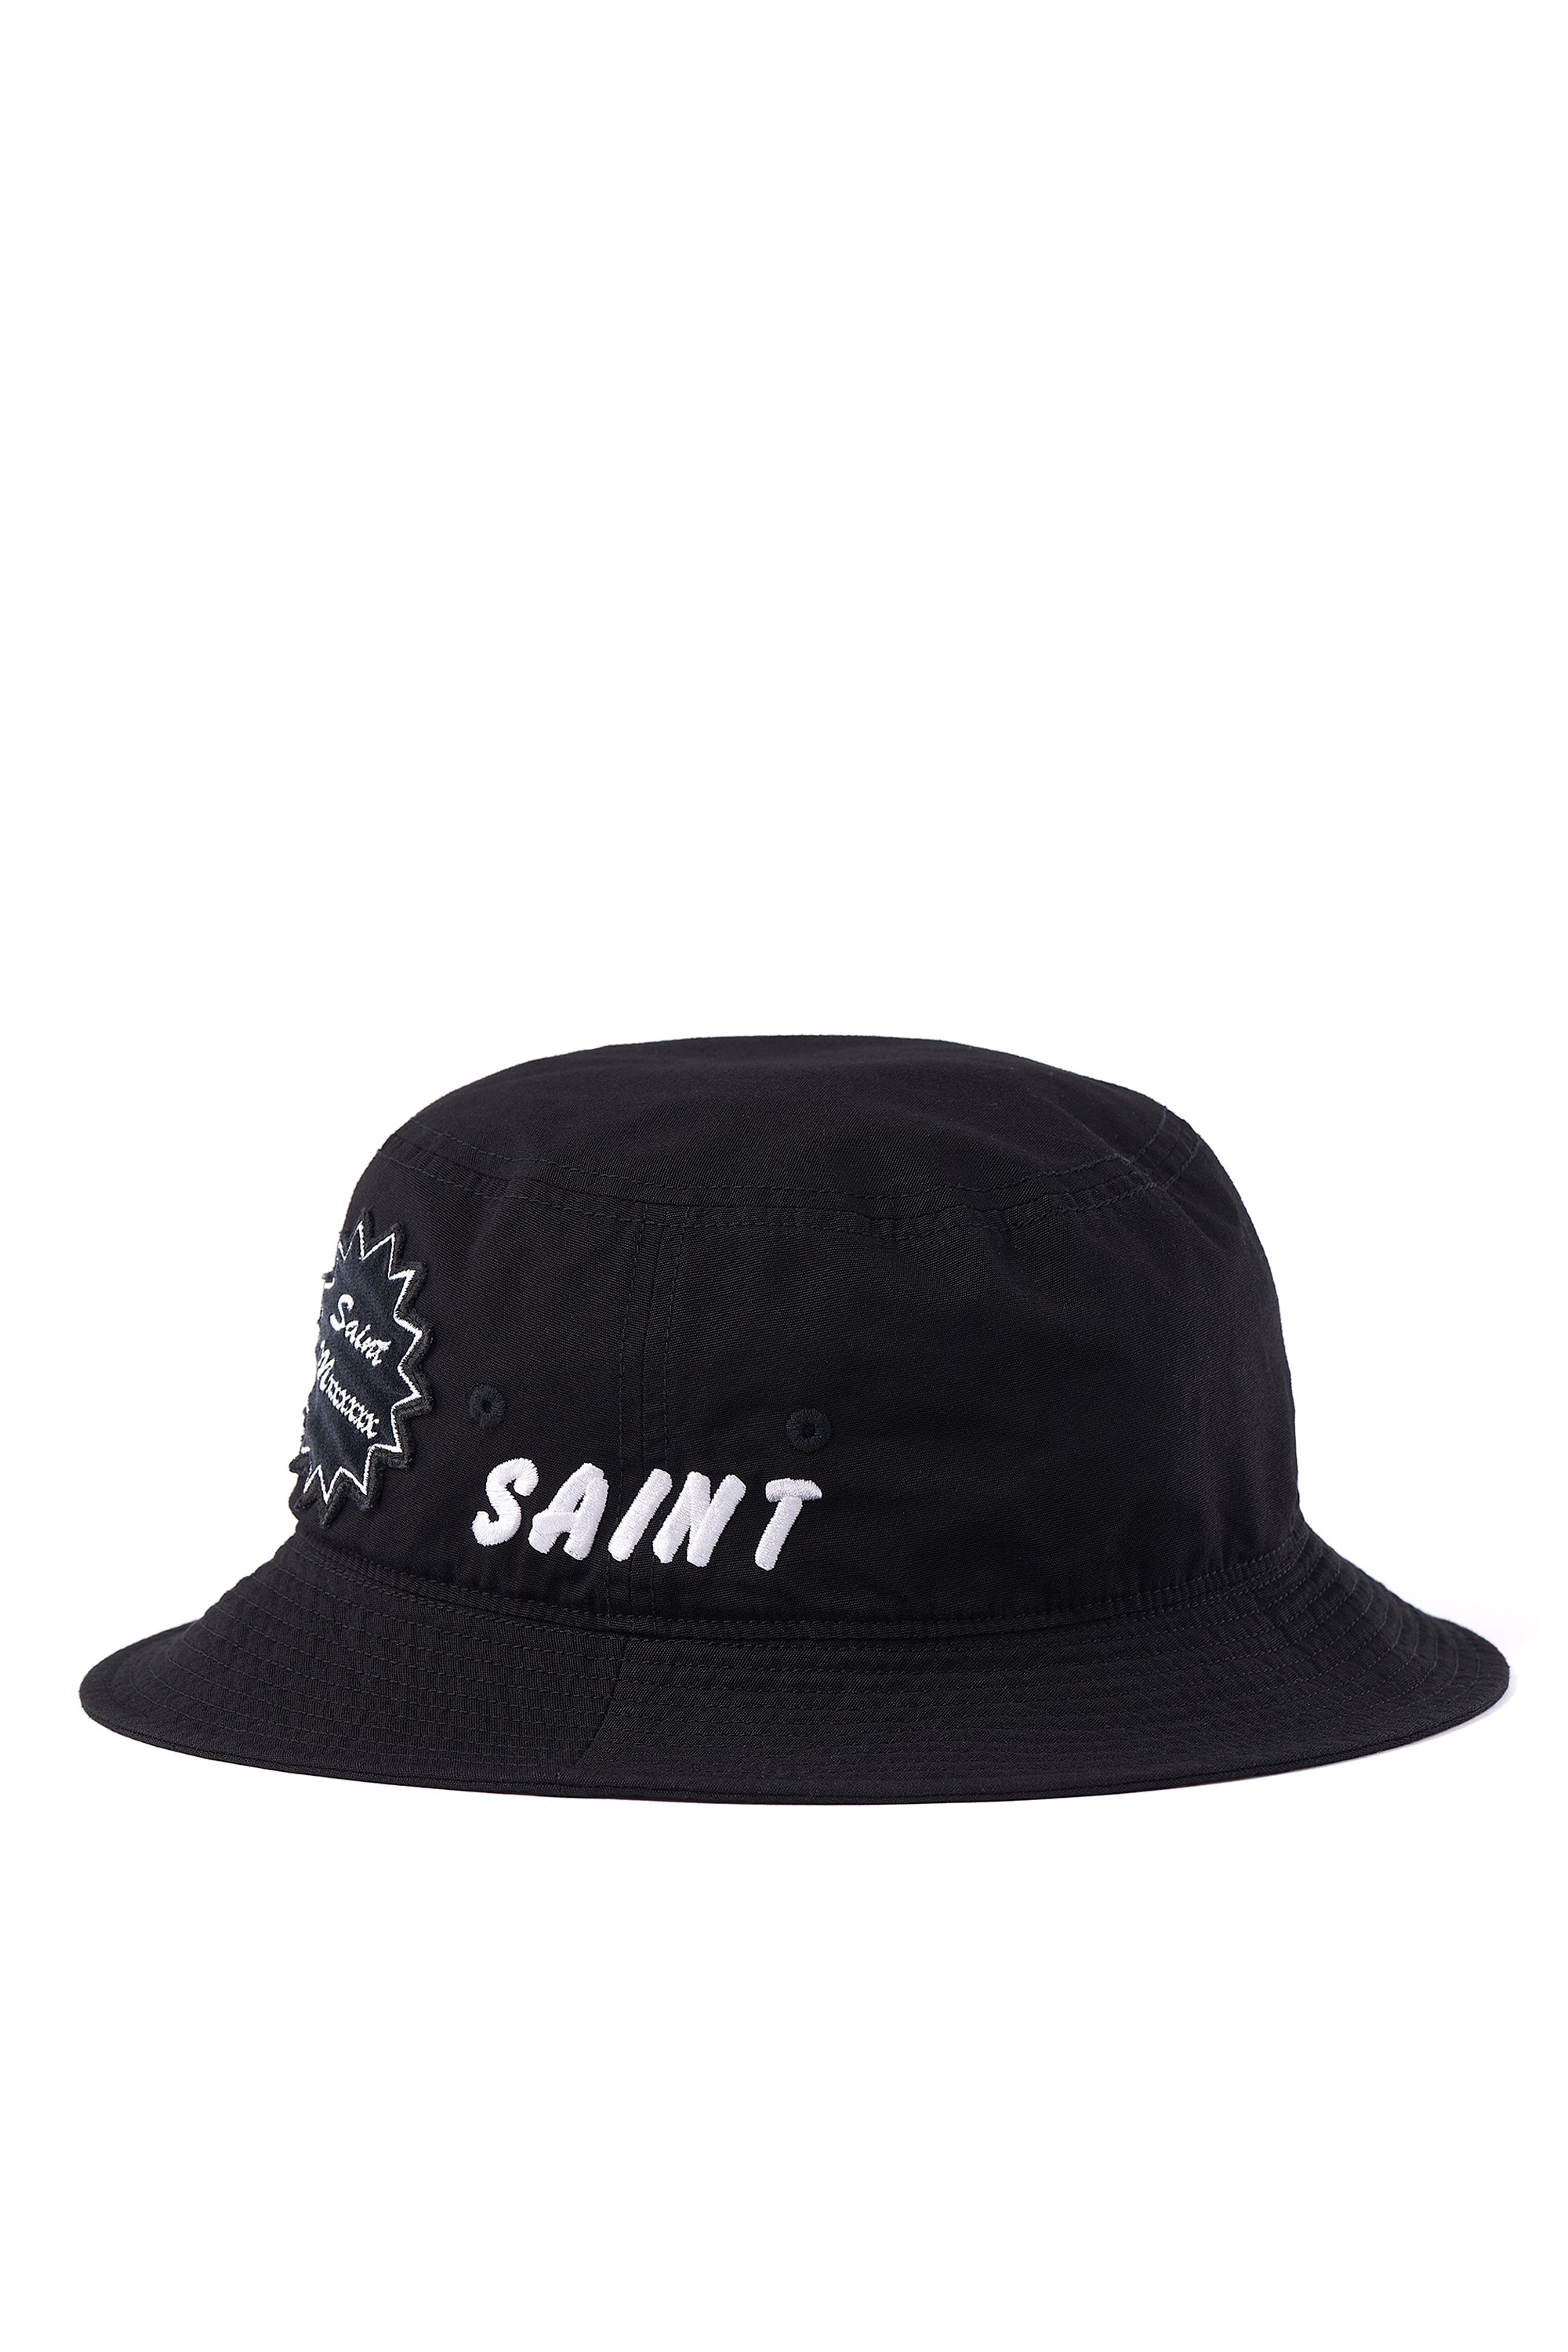 SAINT Mxxxxxx BACKET HAT/SAINT/BLACK 新品